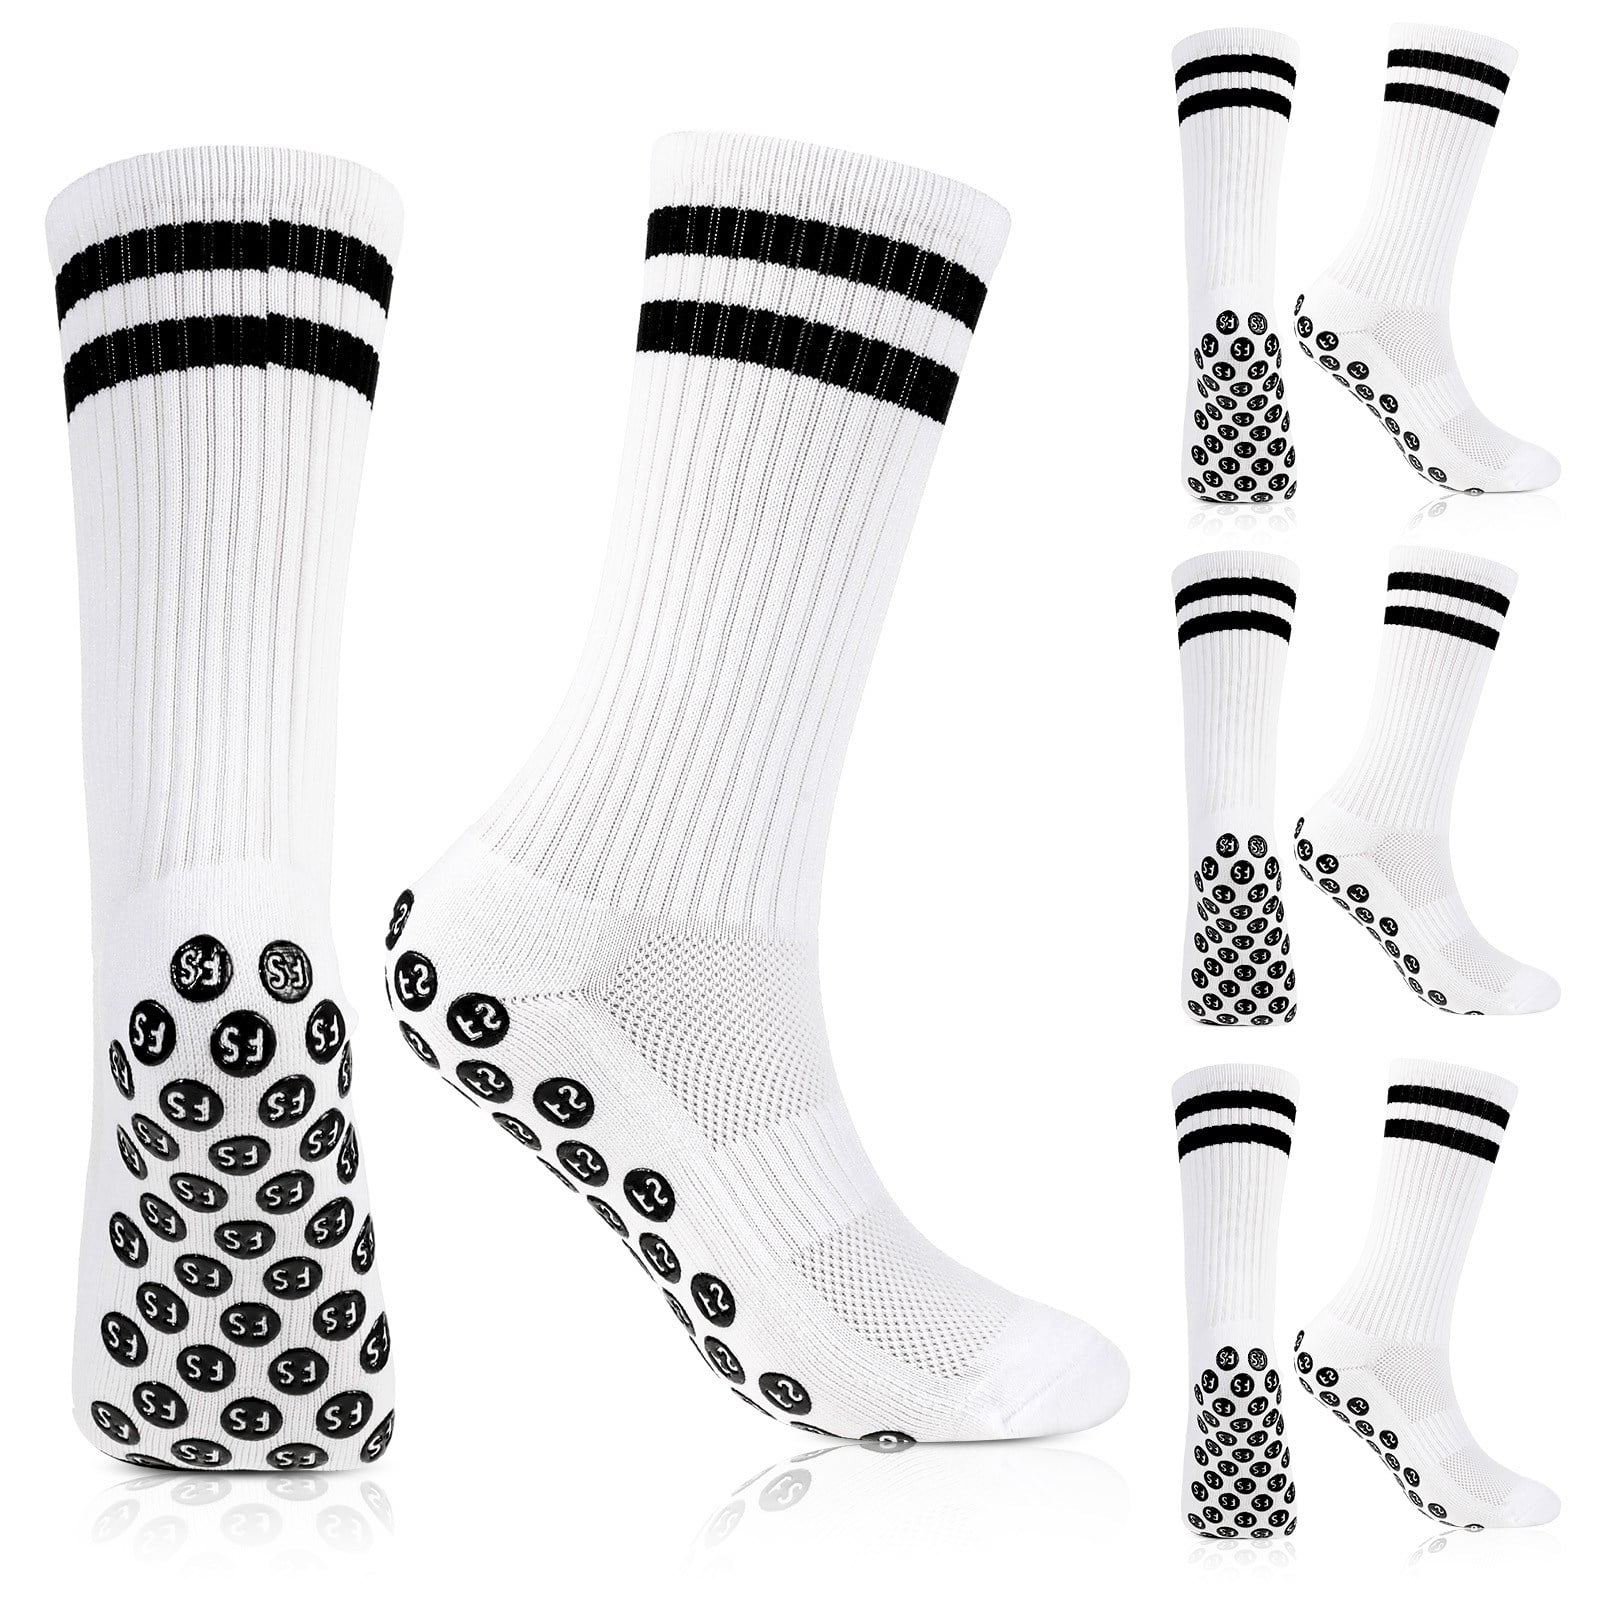 2 Pairs Grip Socks Football Non-slip Sports Football Socks Men Women 39-42  43-46 Grip Socks With Rubber Dots, White